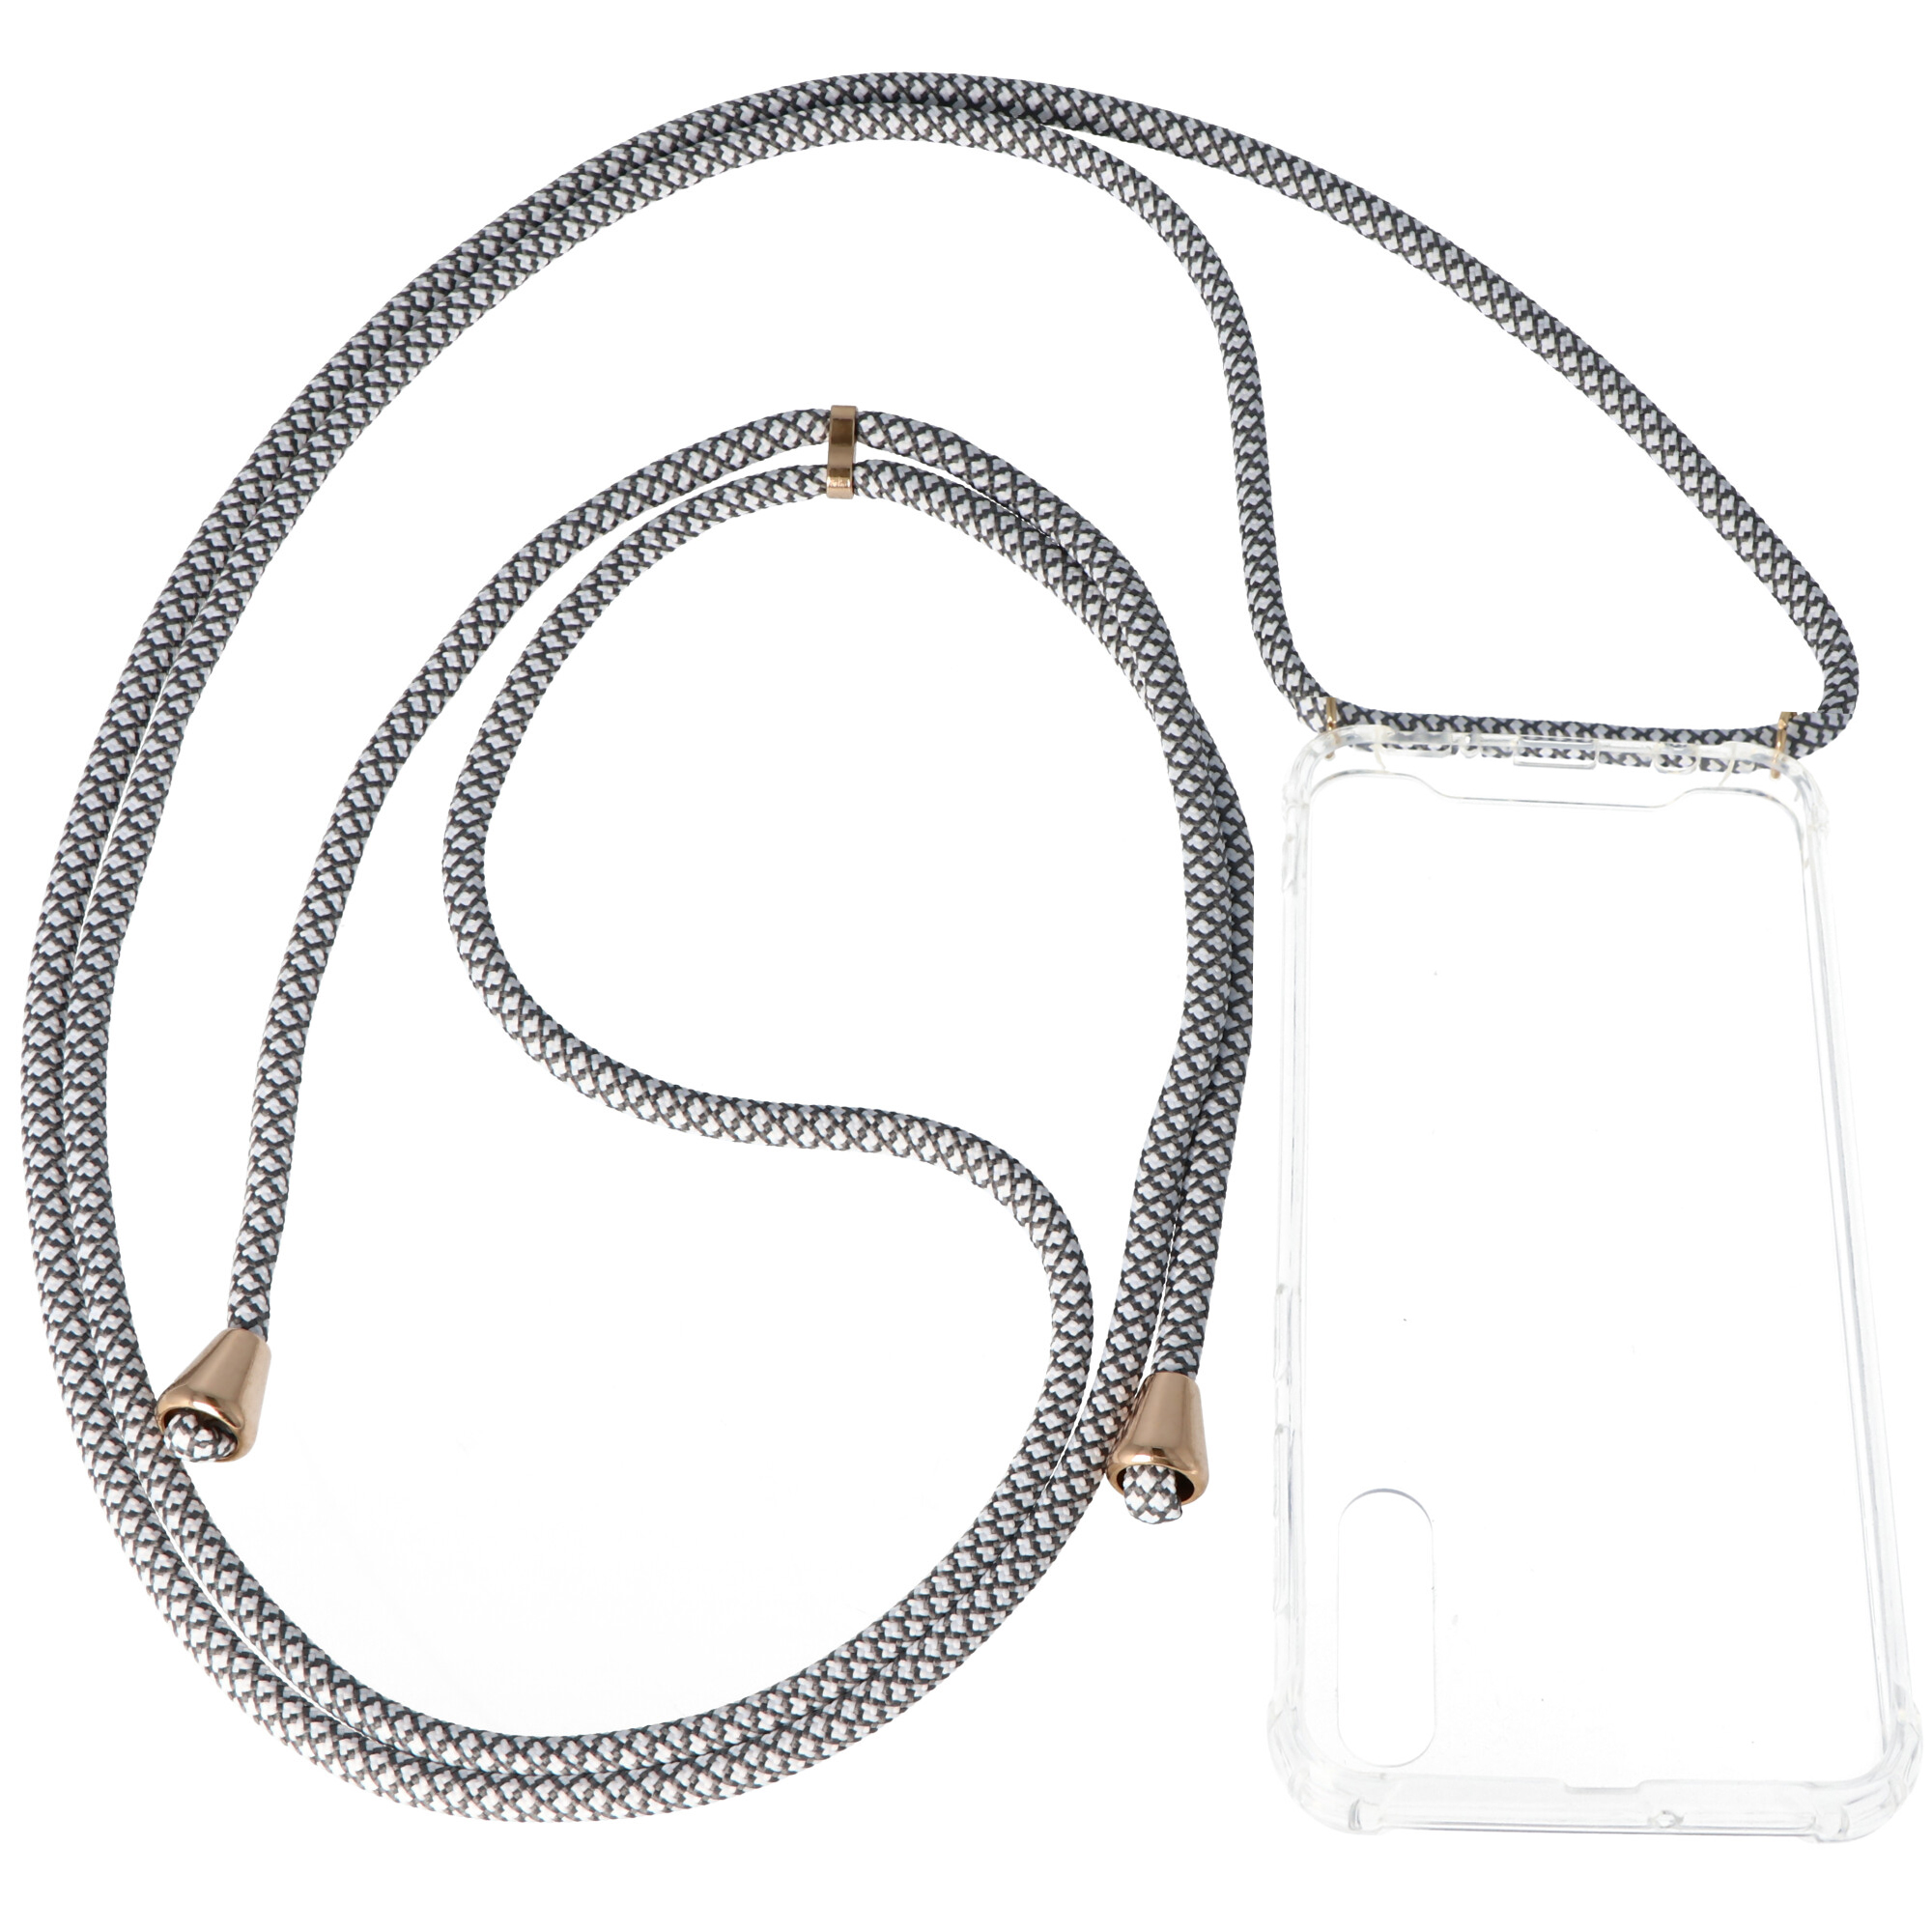 Necklace Case passend für Samsung Galaxy A50, Smartphonehülle mit Kordel grau,weiß zum Umhängen